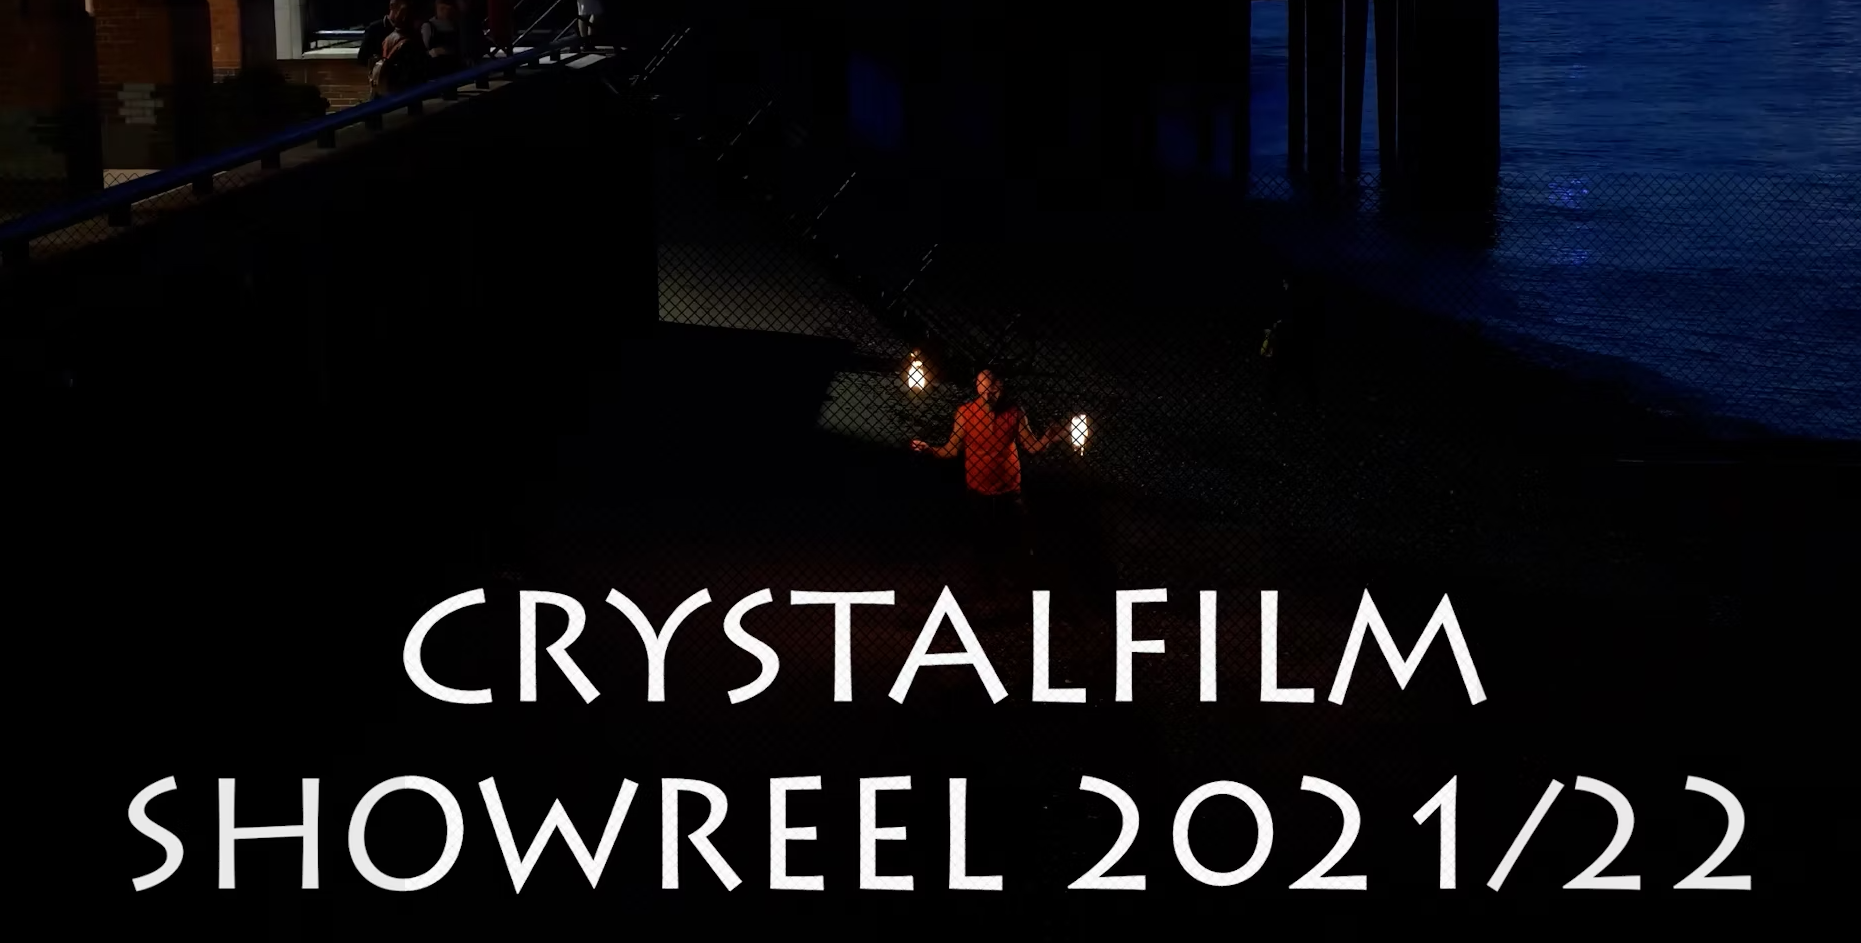 Crystalfilm Latest Showreel 2022